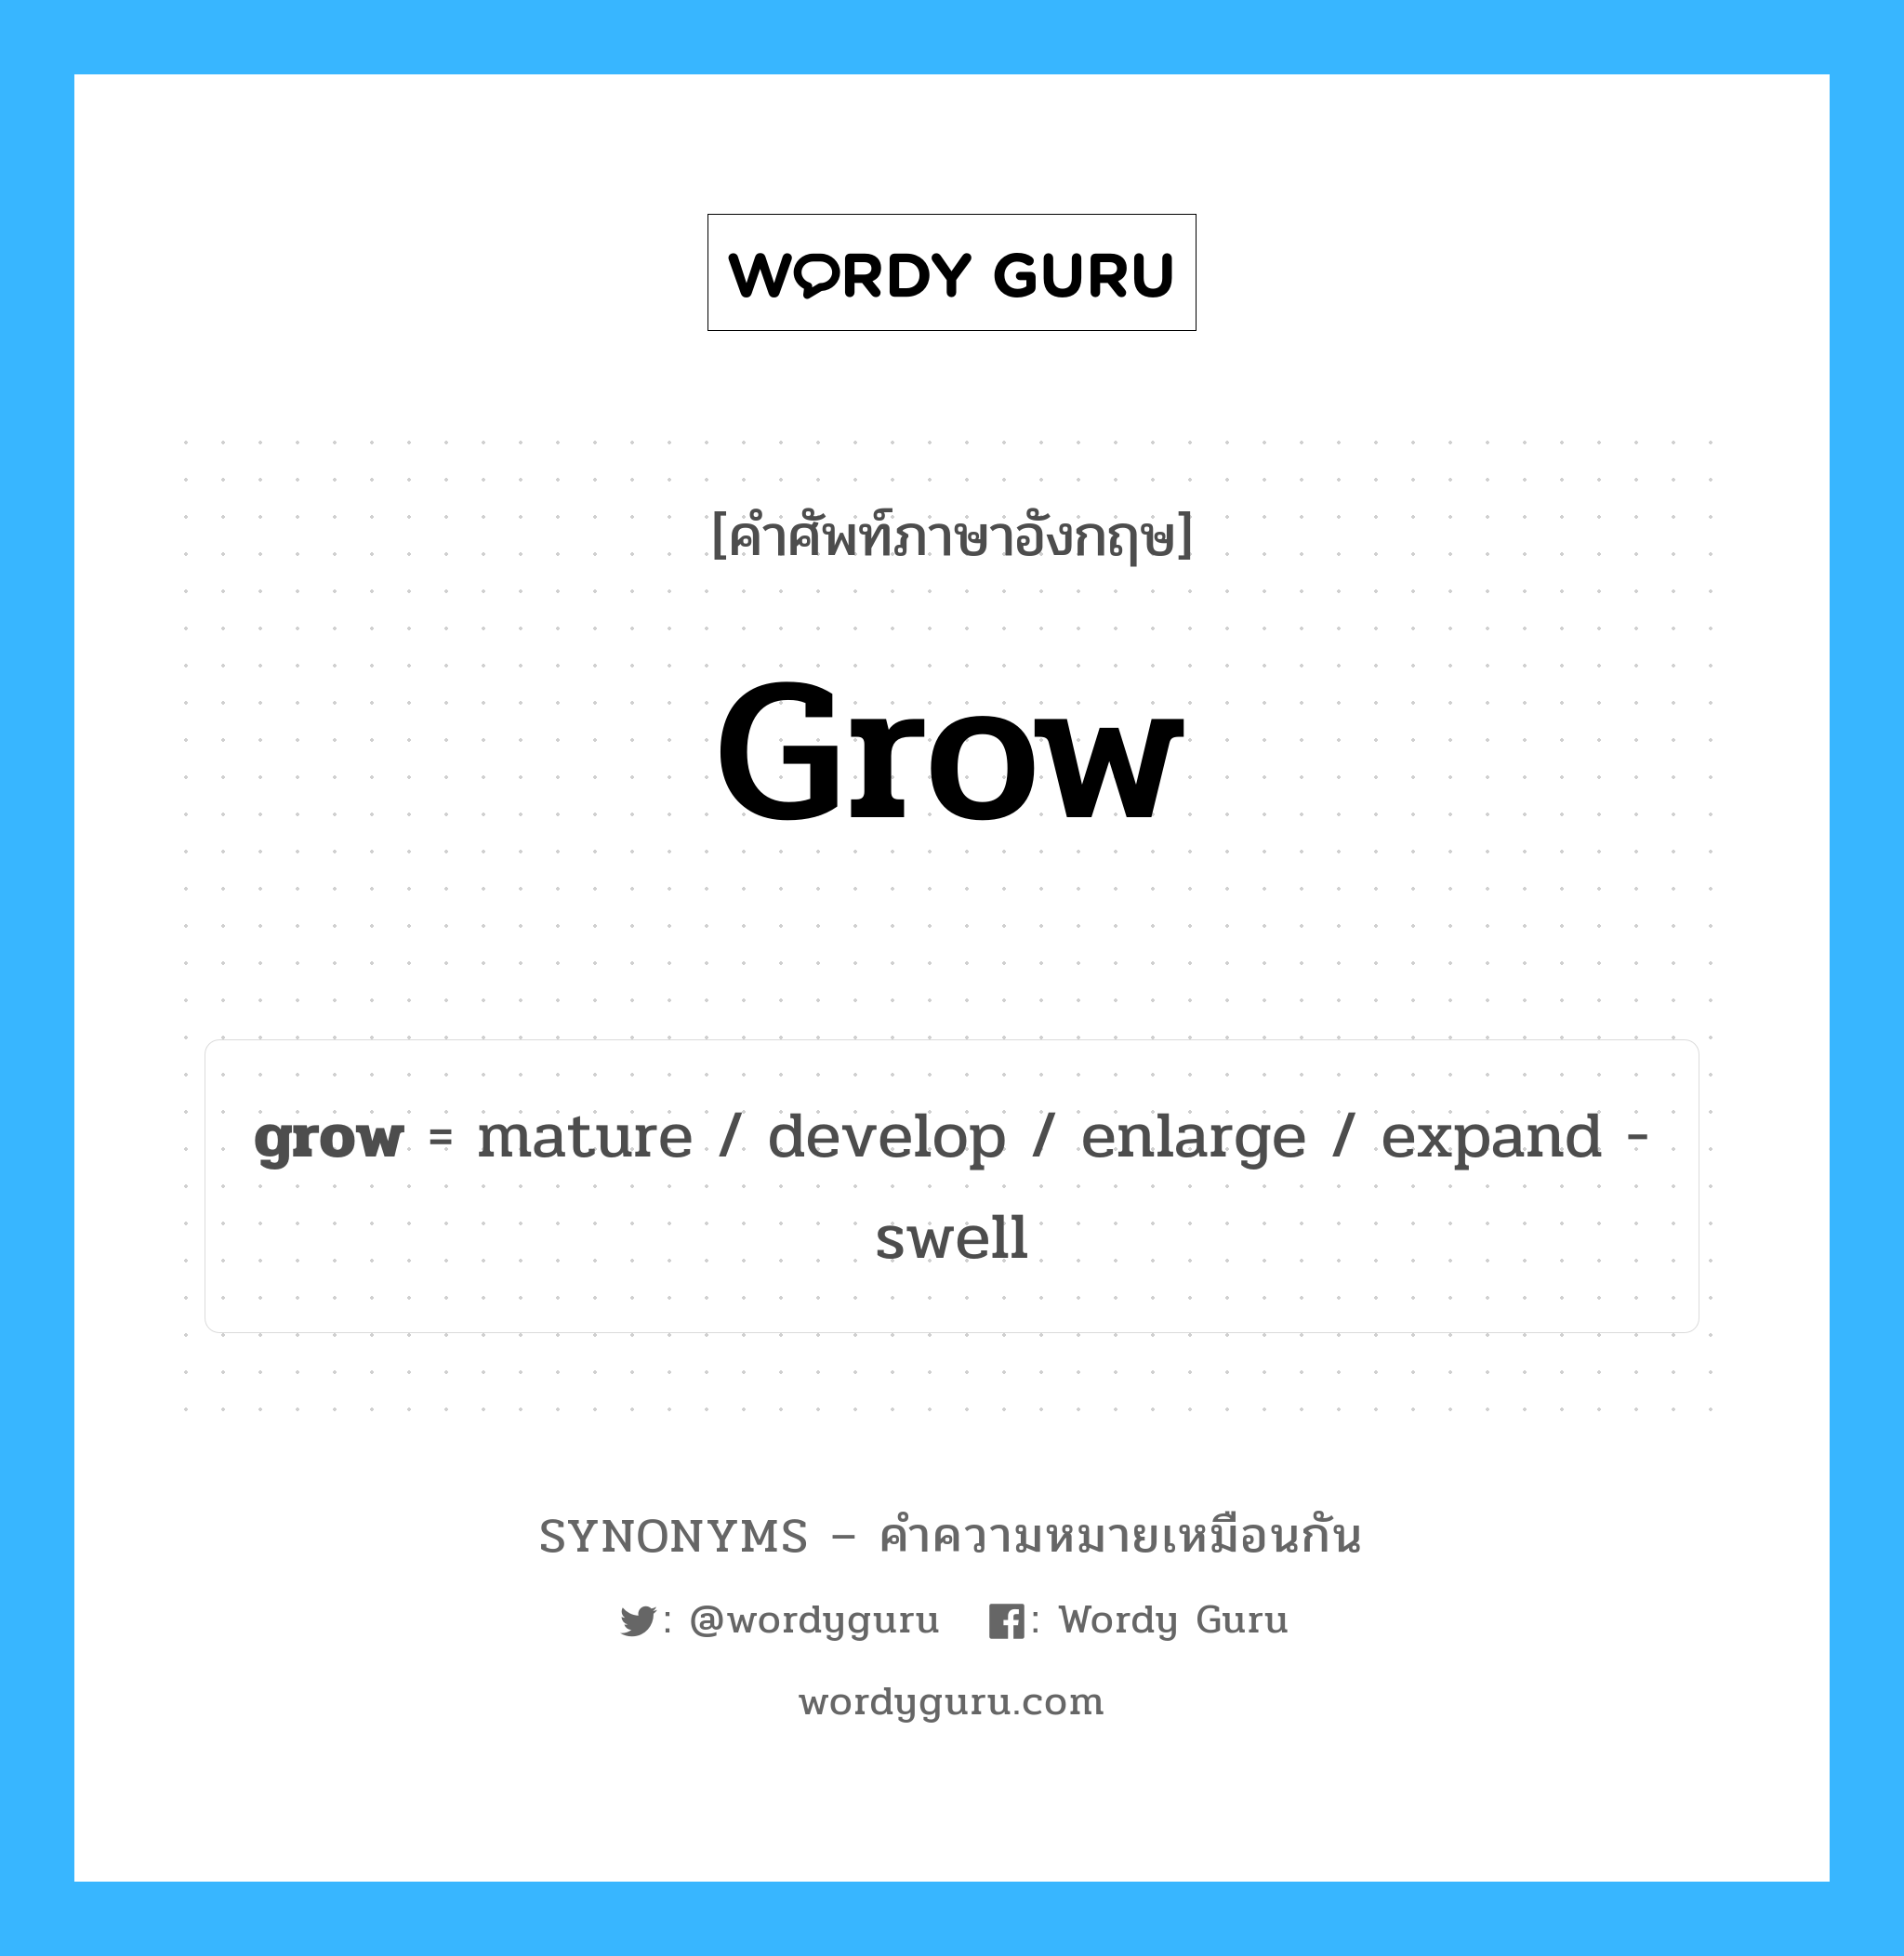 mature เป็นหนึ่งใน grow และมีคำอื่น ๆ อีกดังนี้, คำศัพท์ภาษาอังกฤษ mature ความหมายคล้ายกันกับ grow แปลว่า แก่ ๆ หมวด grow